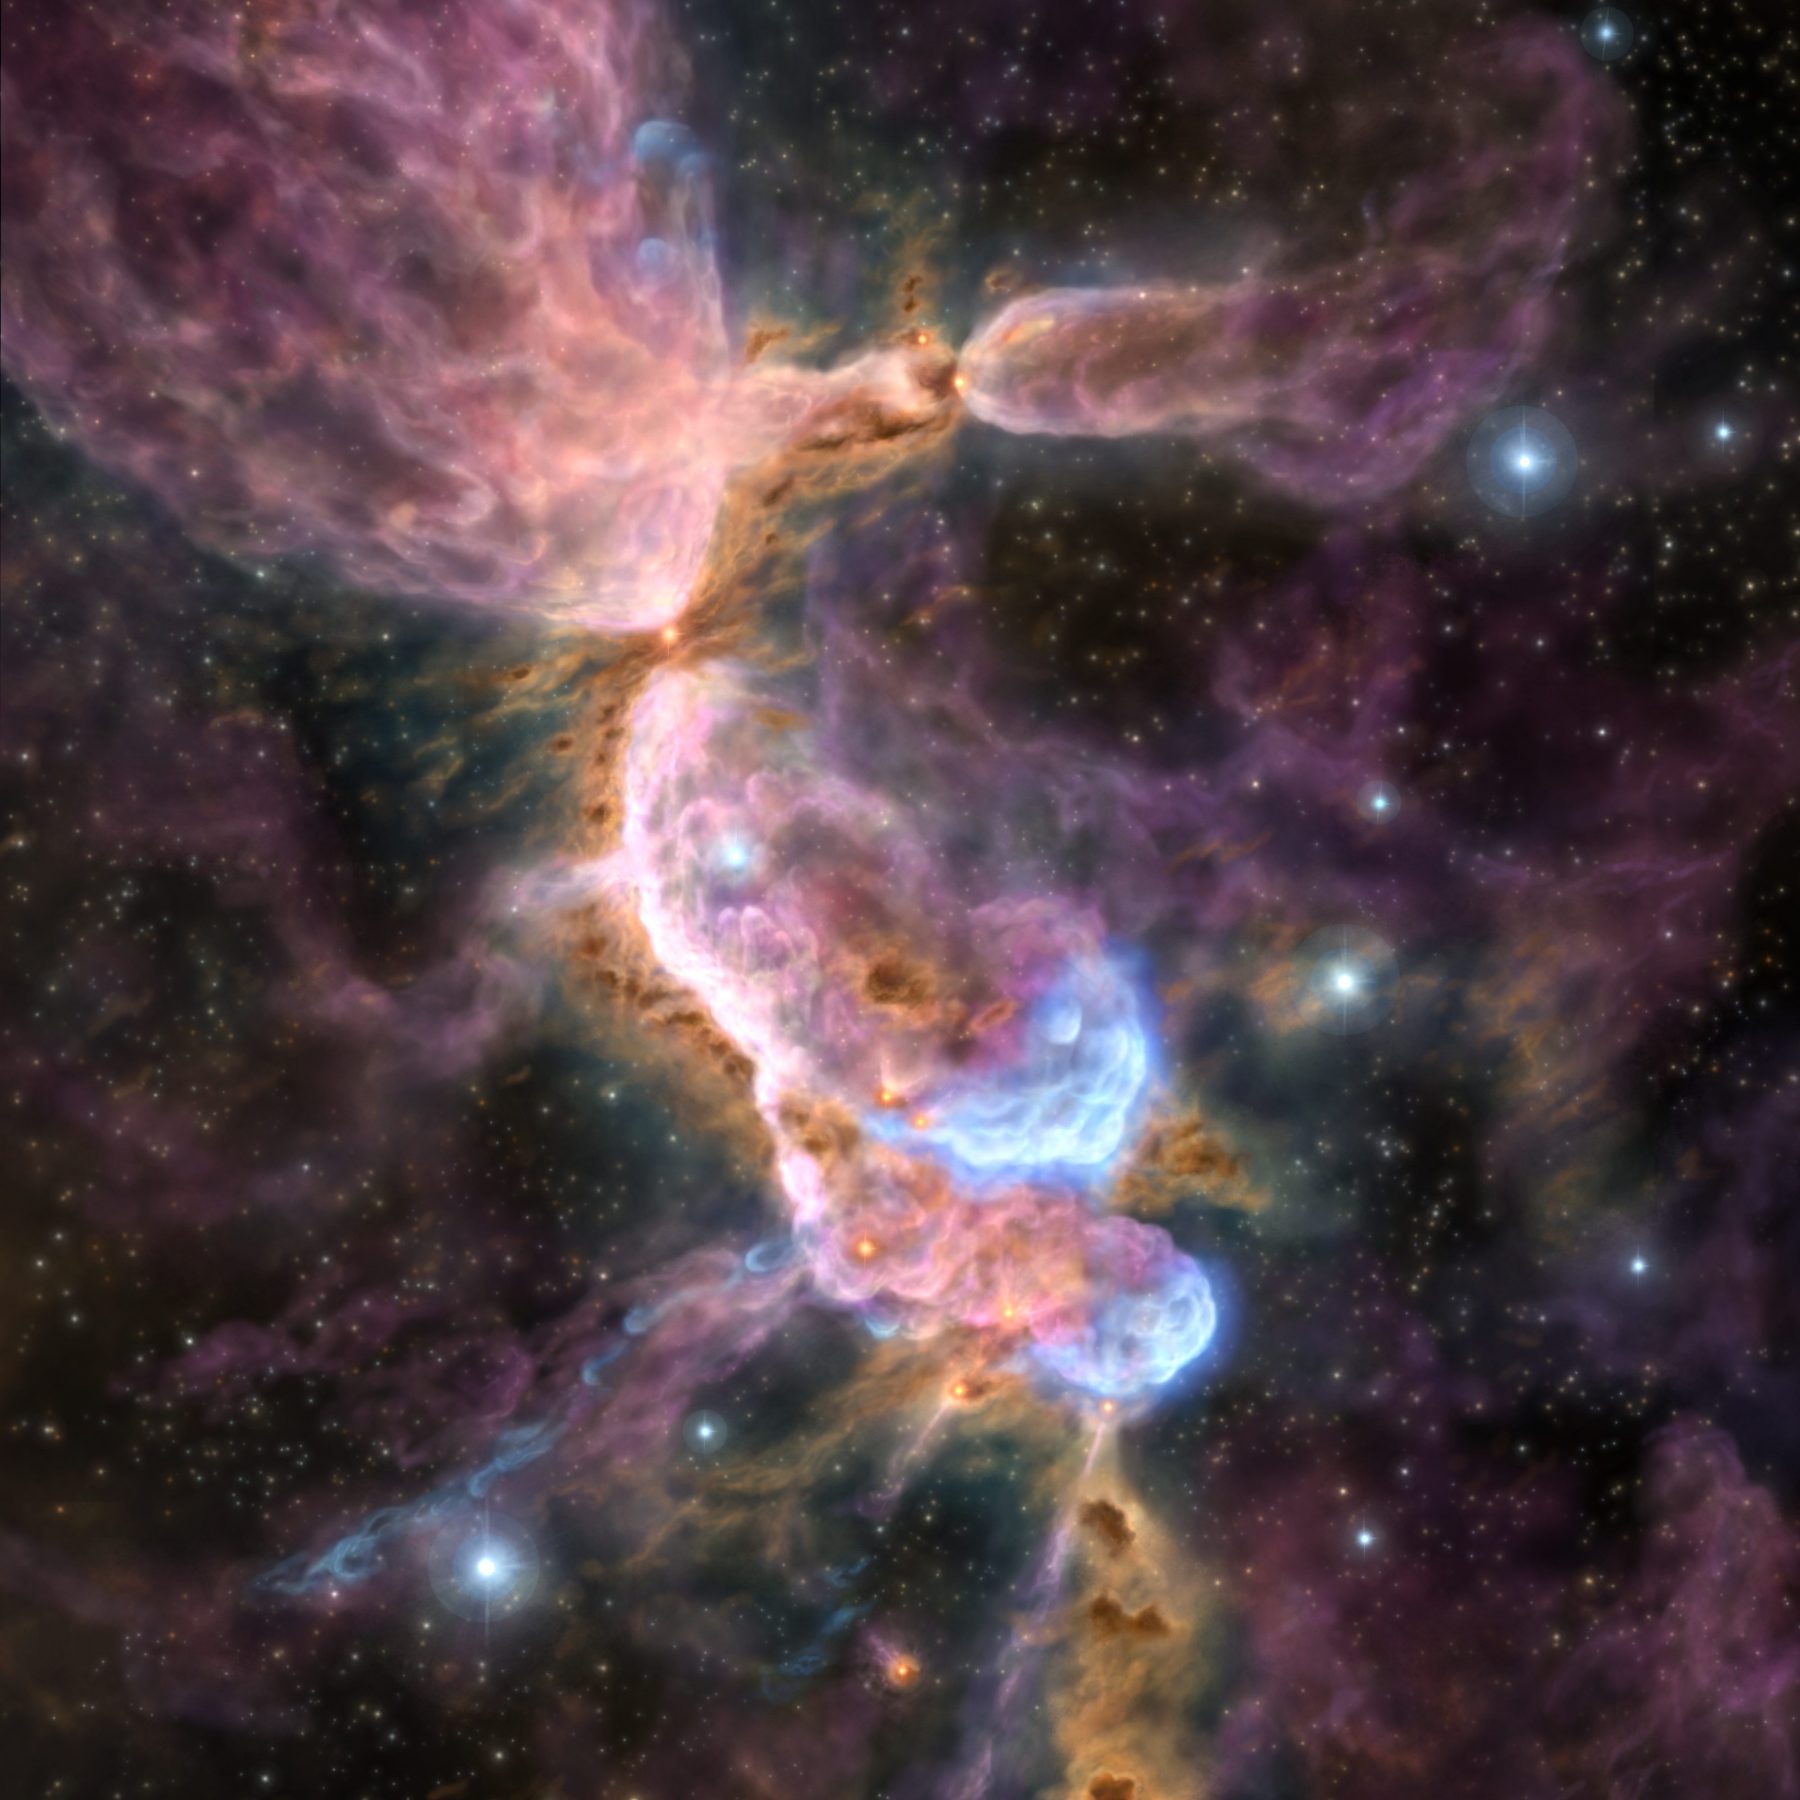 プレスリリース - 星のゆりかごを揺さぶる若い星からの産声 - アルマ望遠鏡